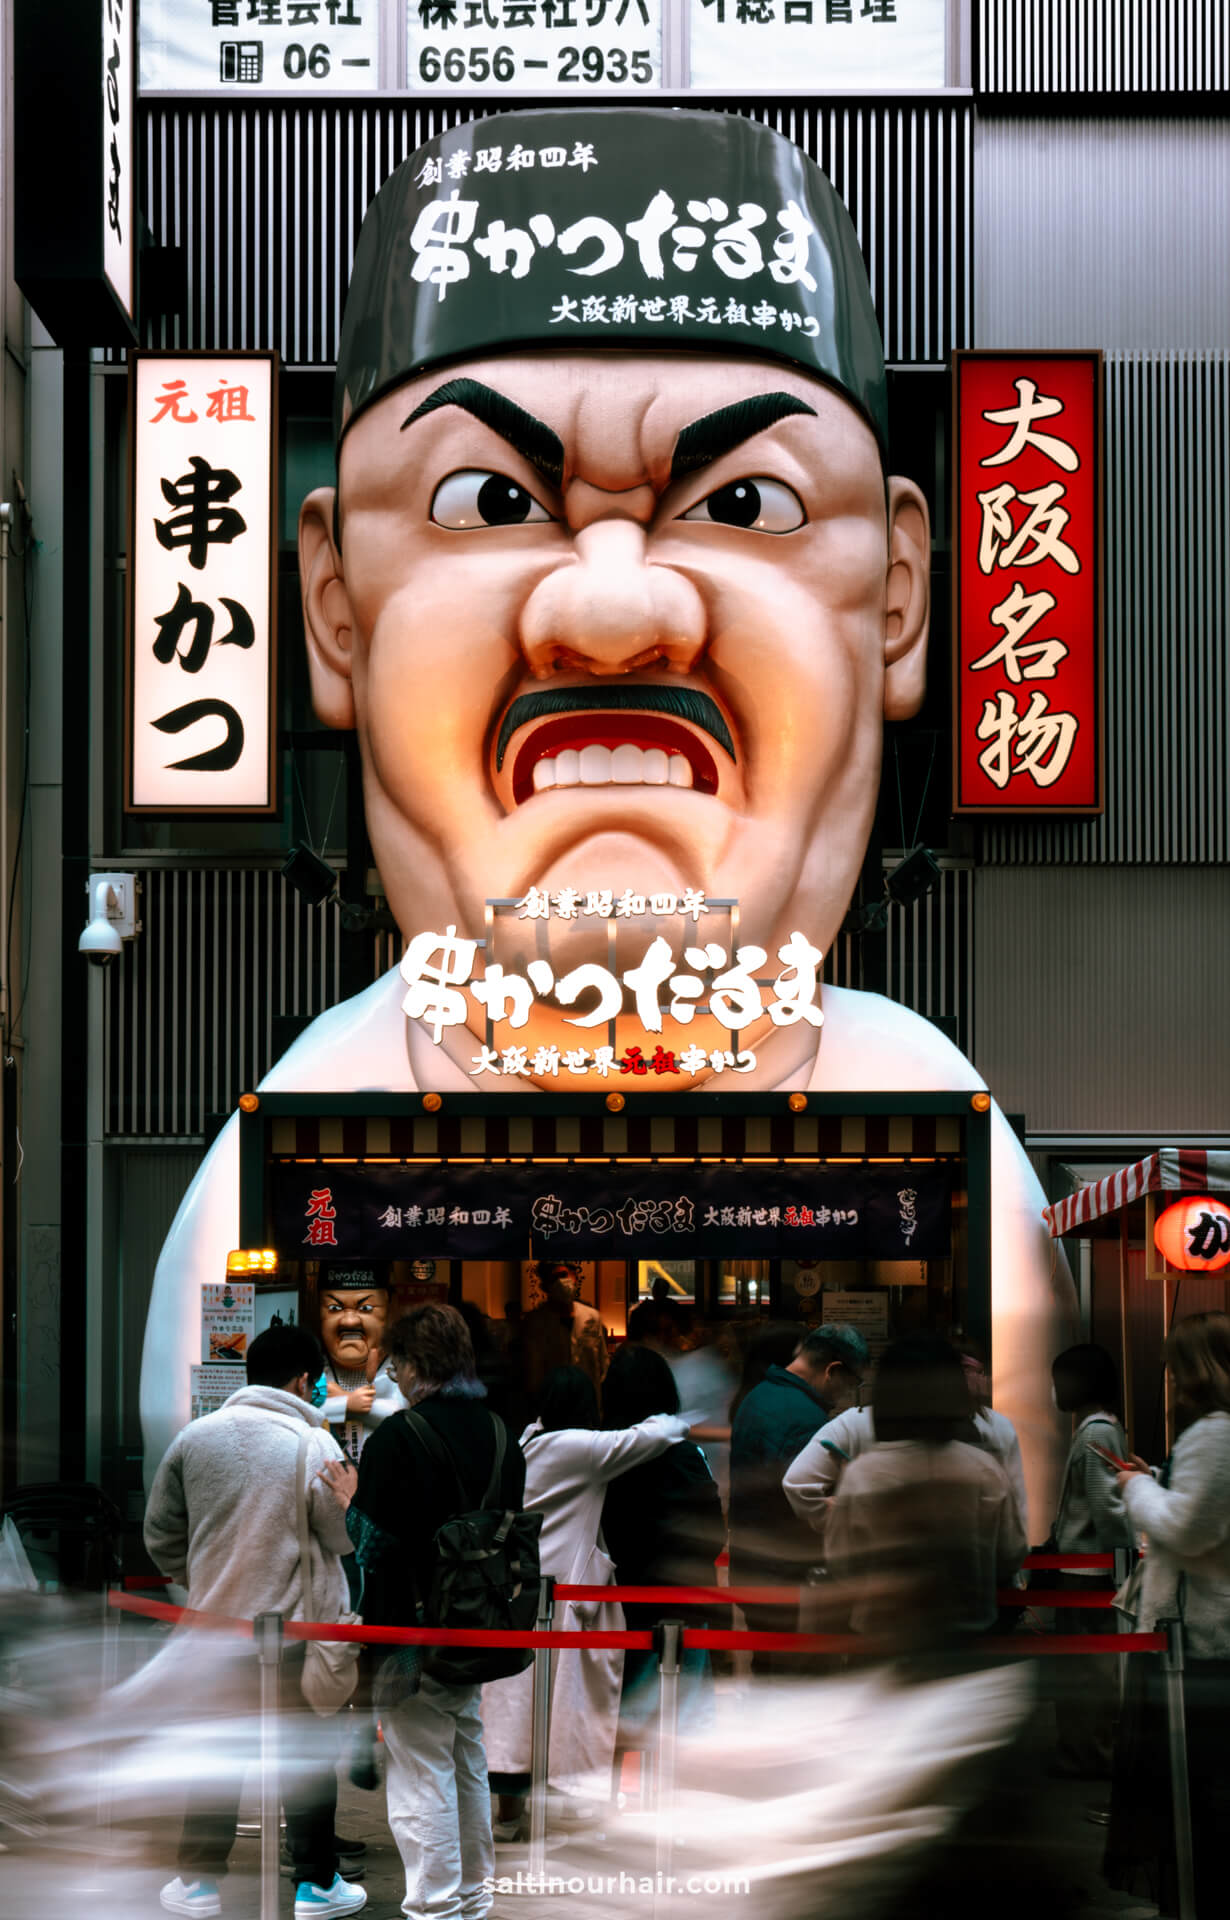 things to do in osaka japan best restaurant